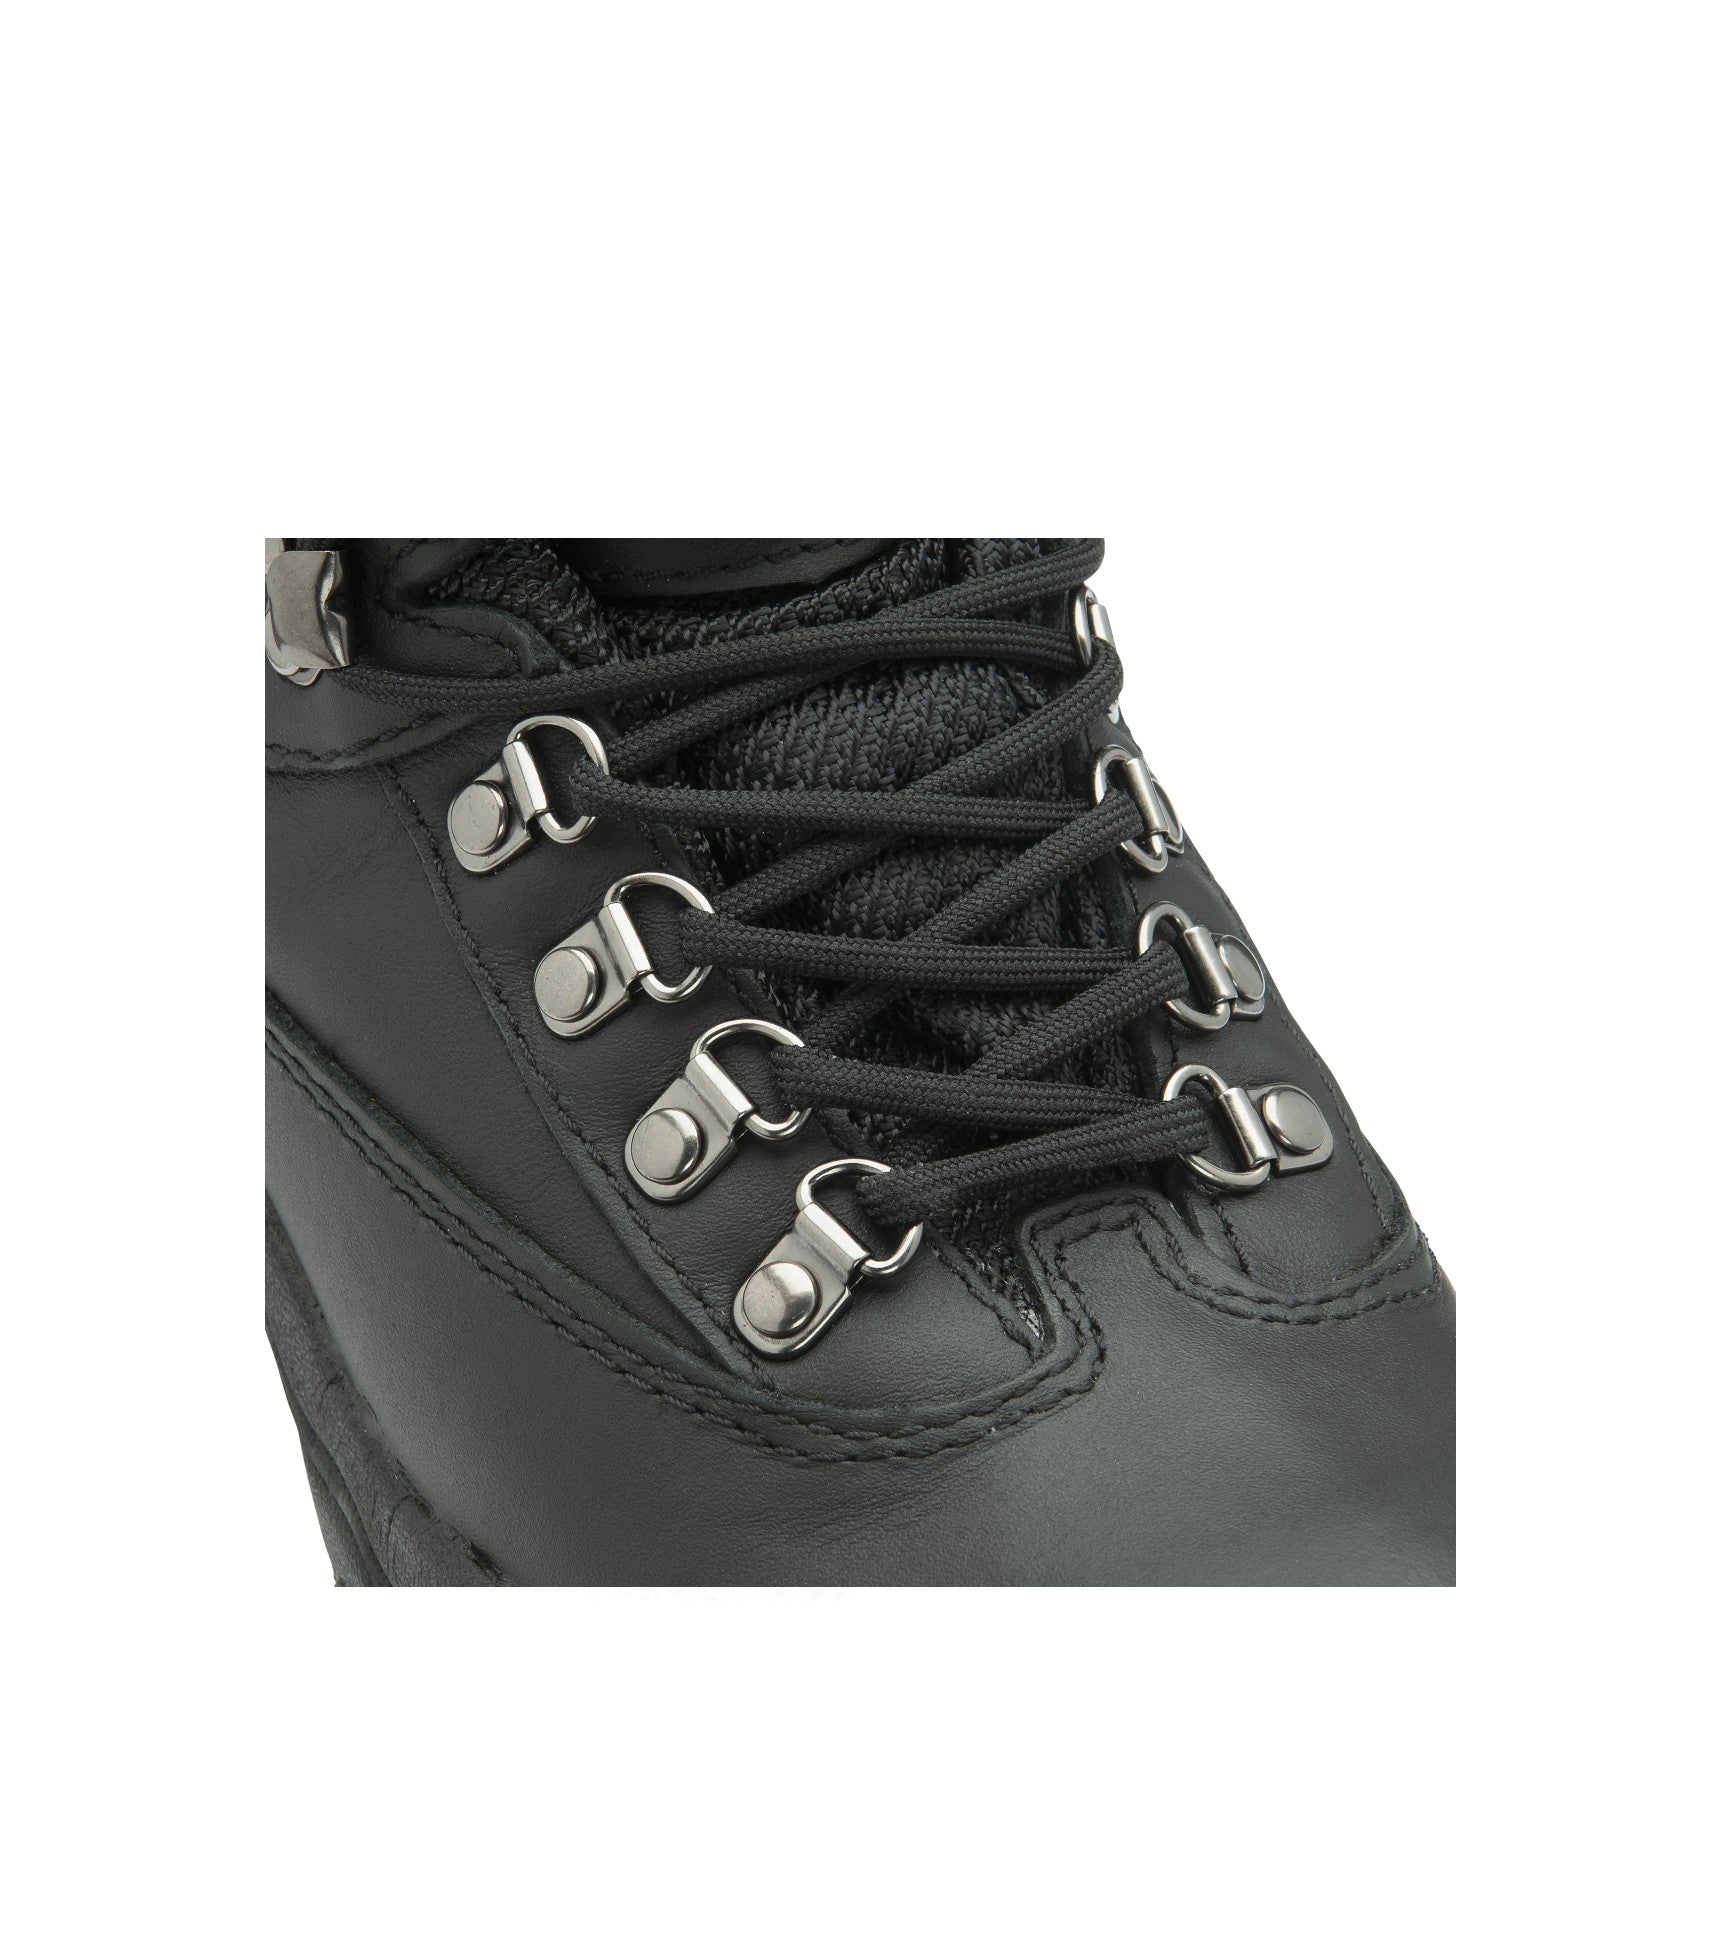 Women's Leather Waterproof Walking Boots - #colour_black